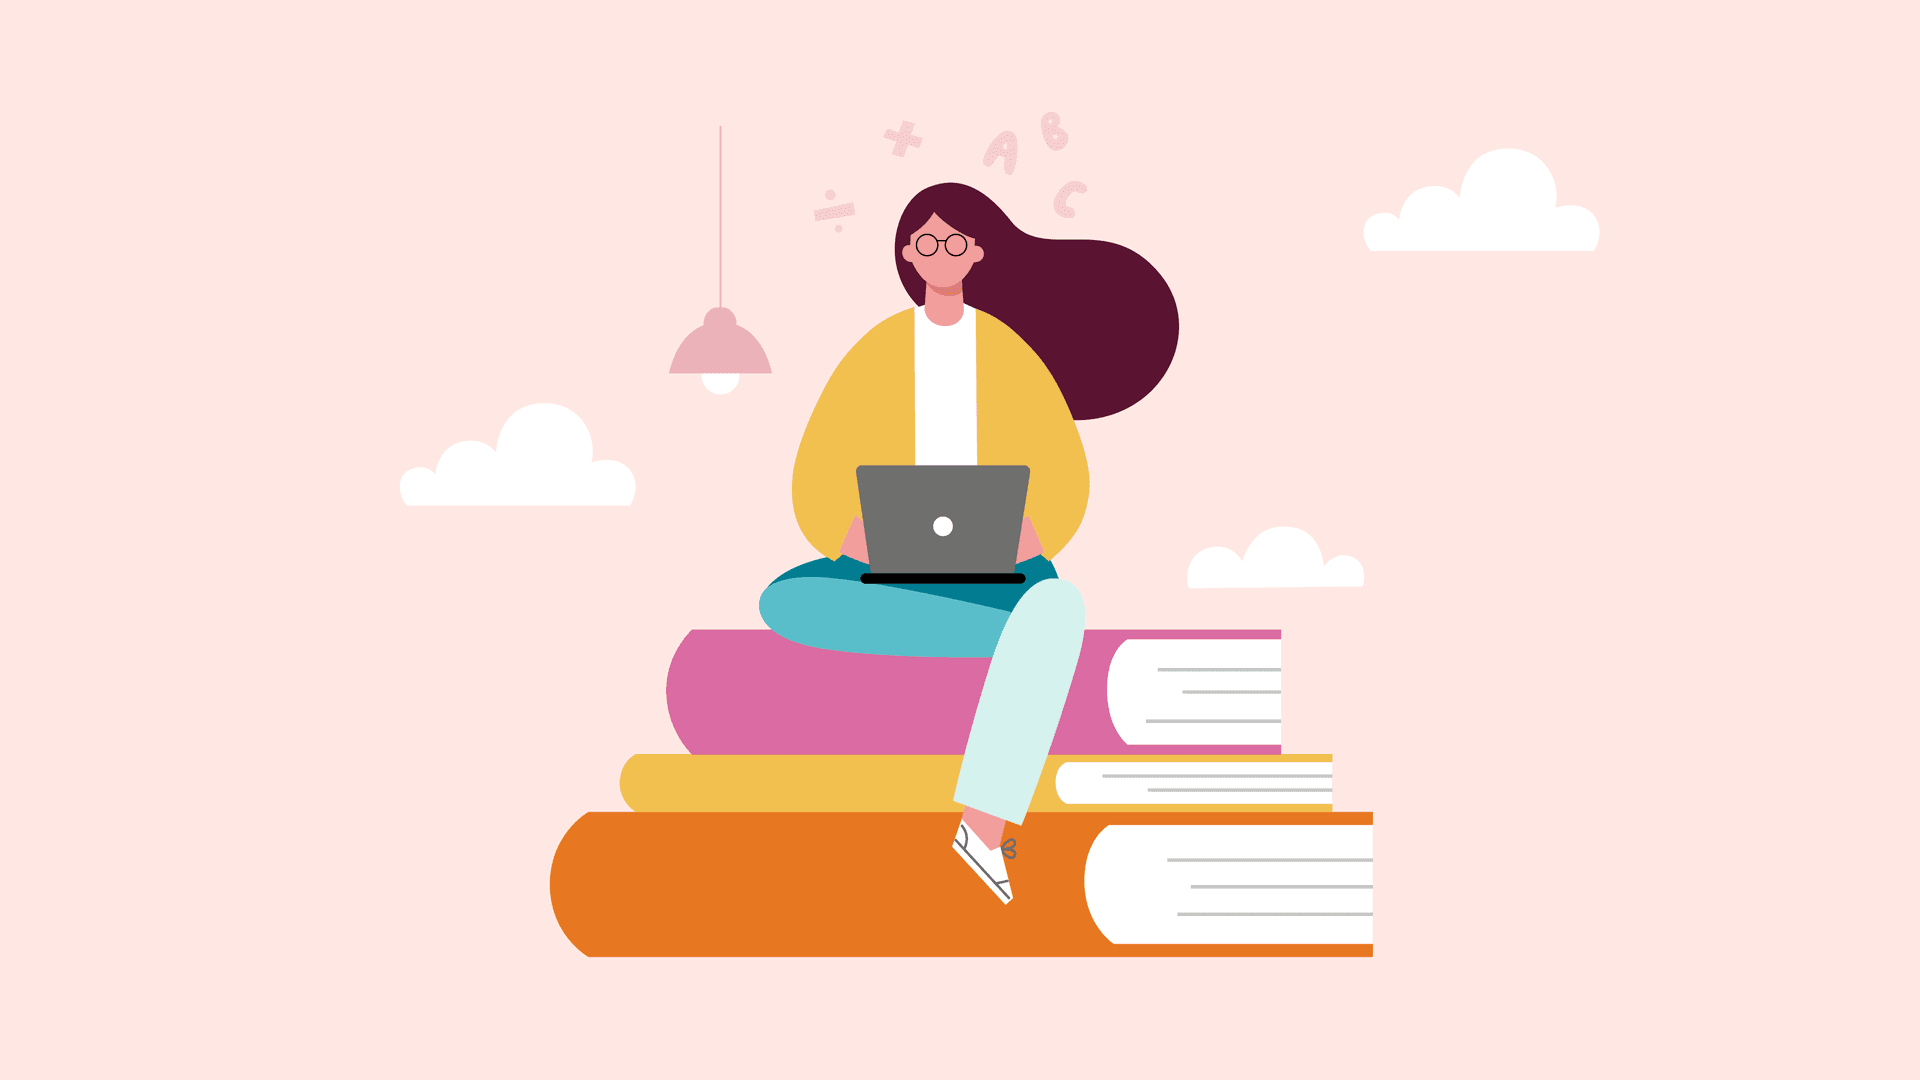 Illustration av en kvinna som sitter på en hög med böcker. I knäet har hon en bärbar dator.